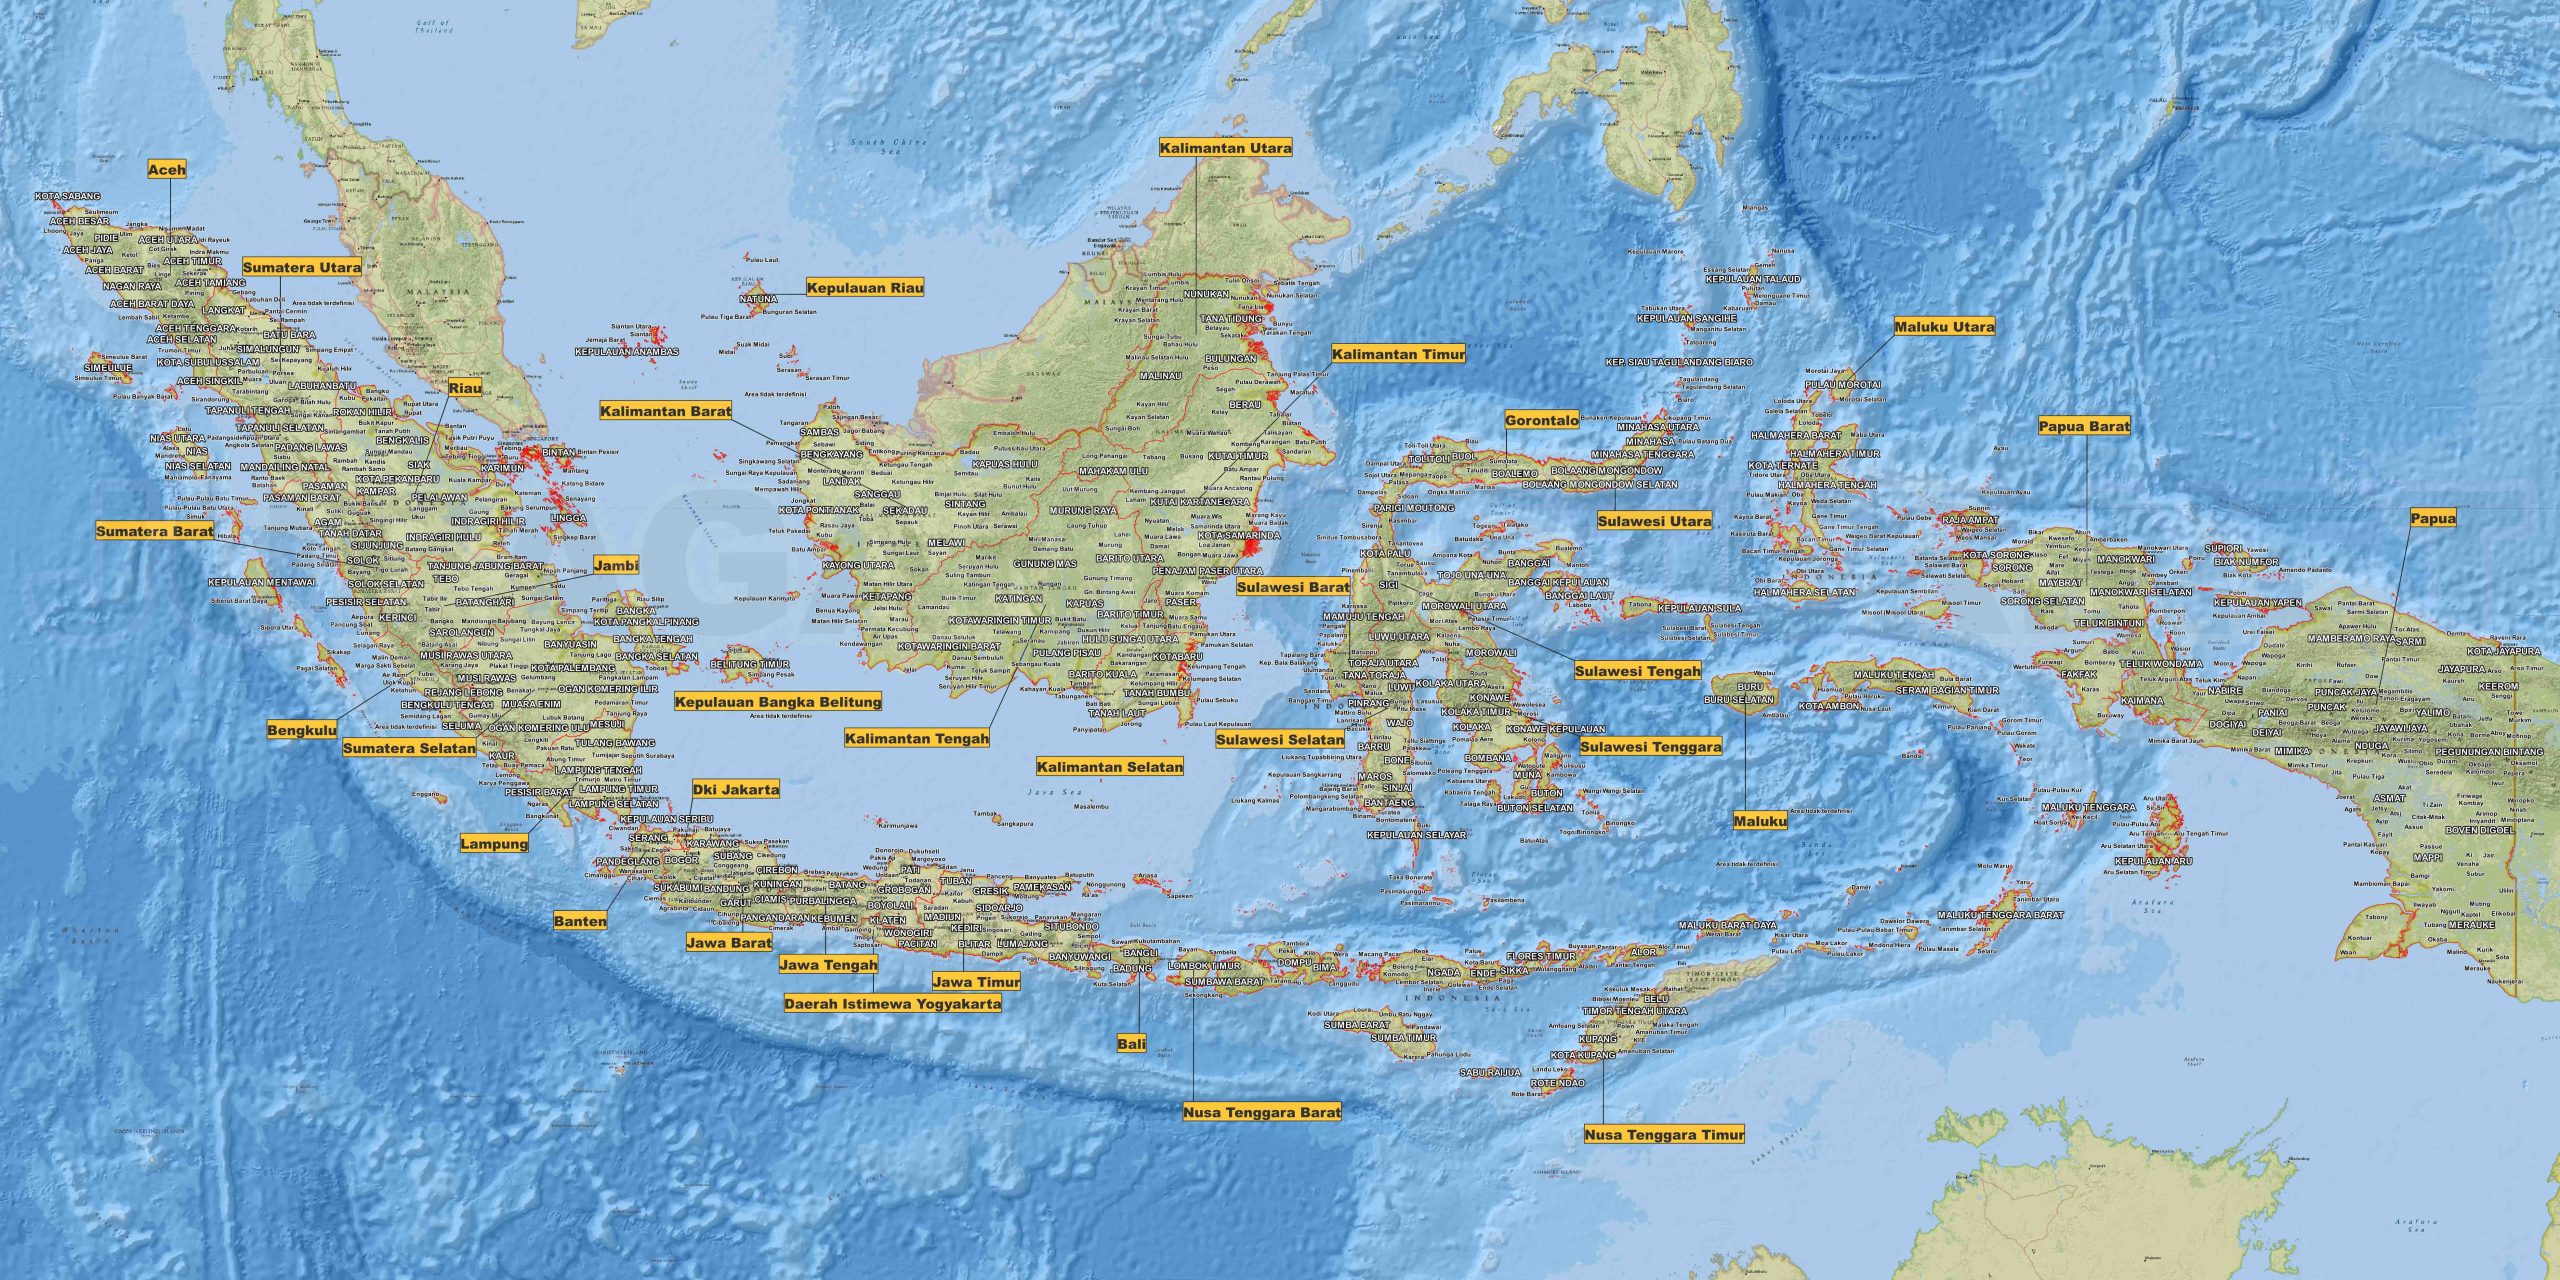 Peta Indonesia Jelas: Informasi yang Mudah Dibaca